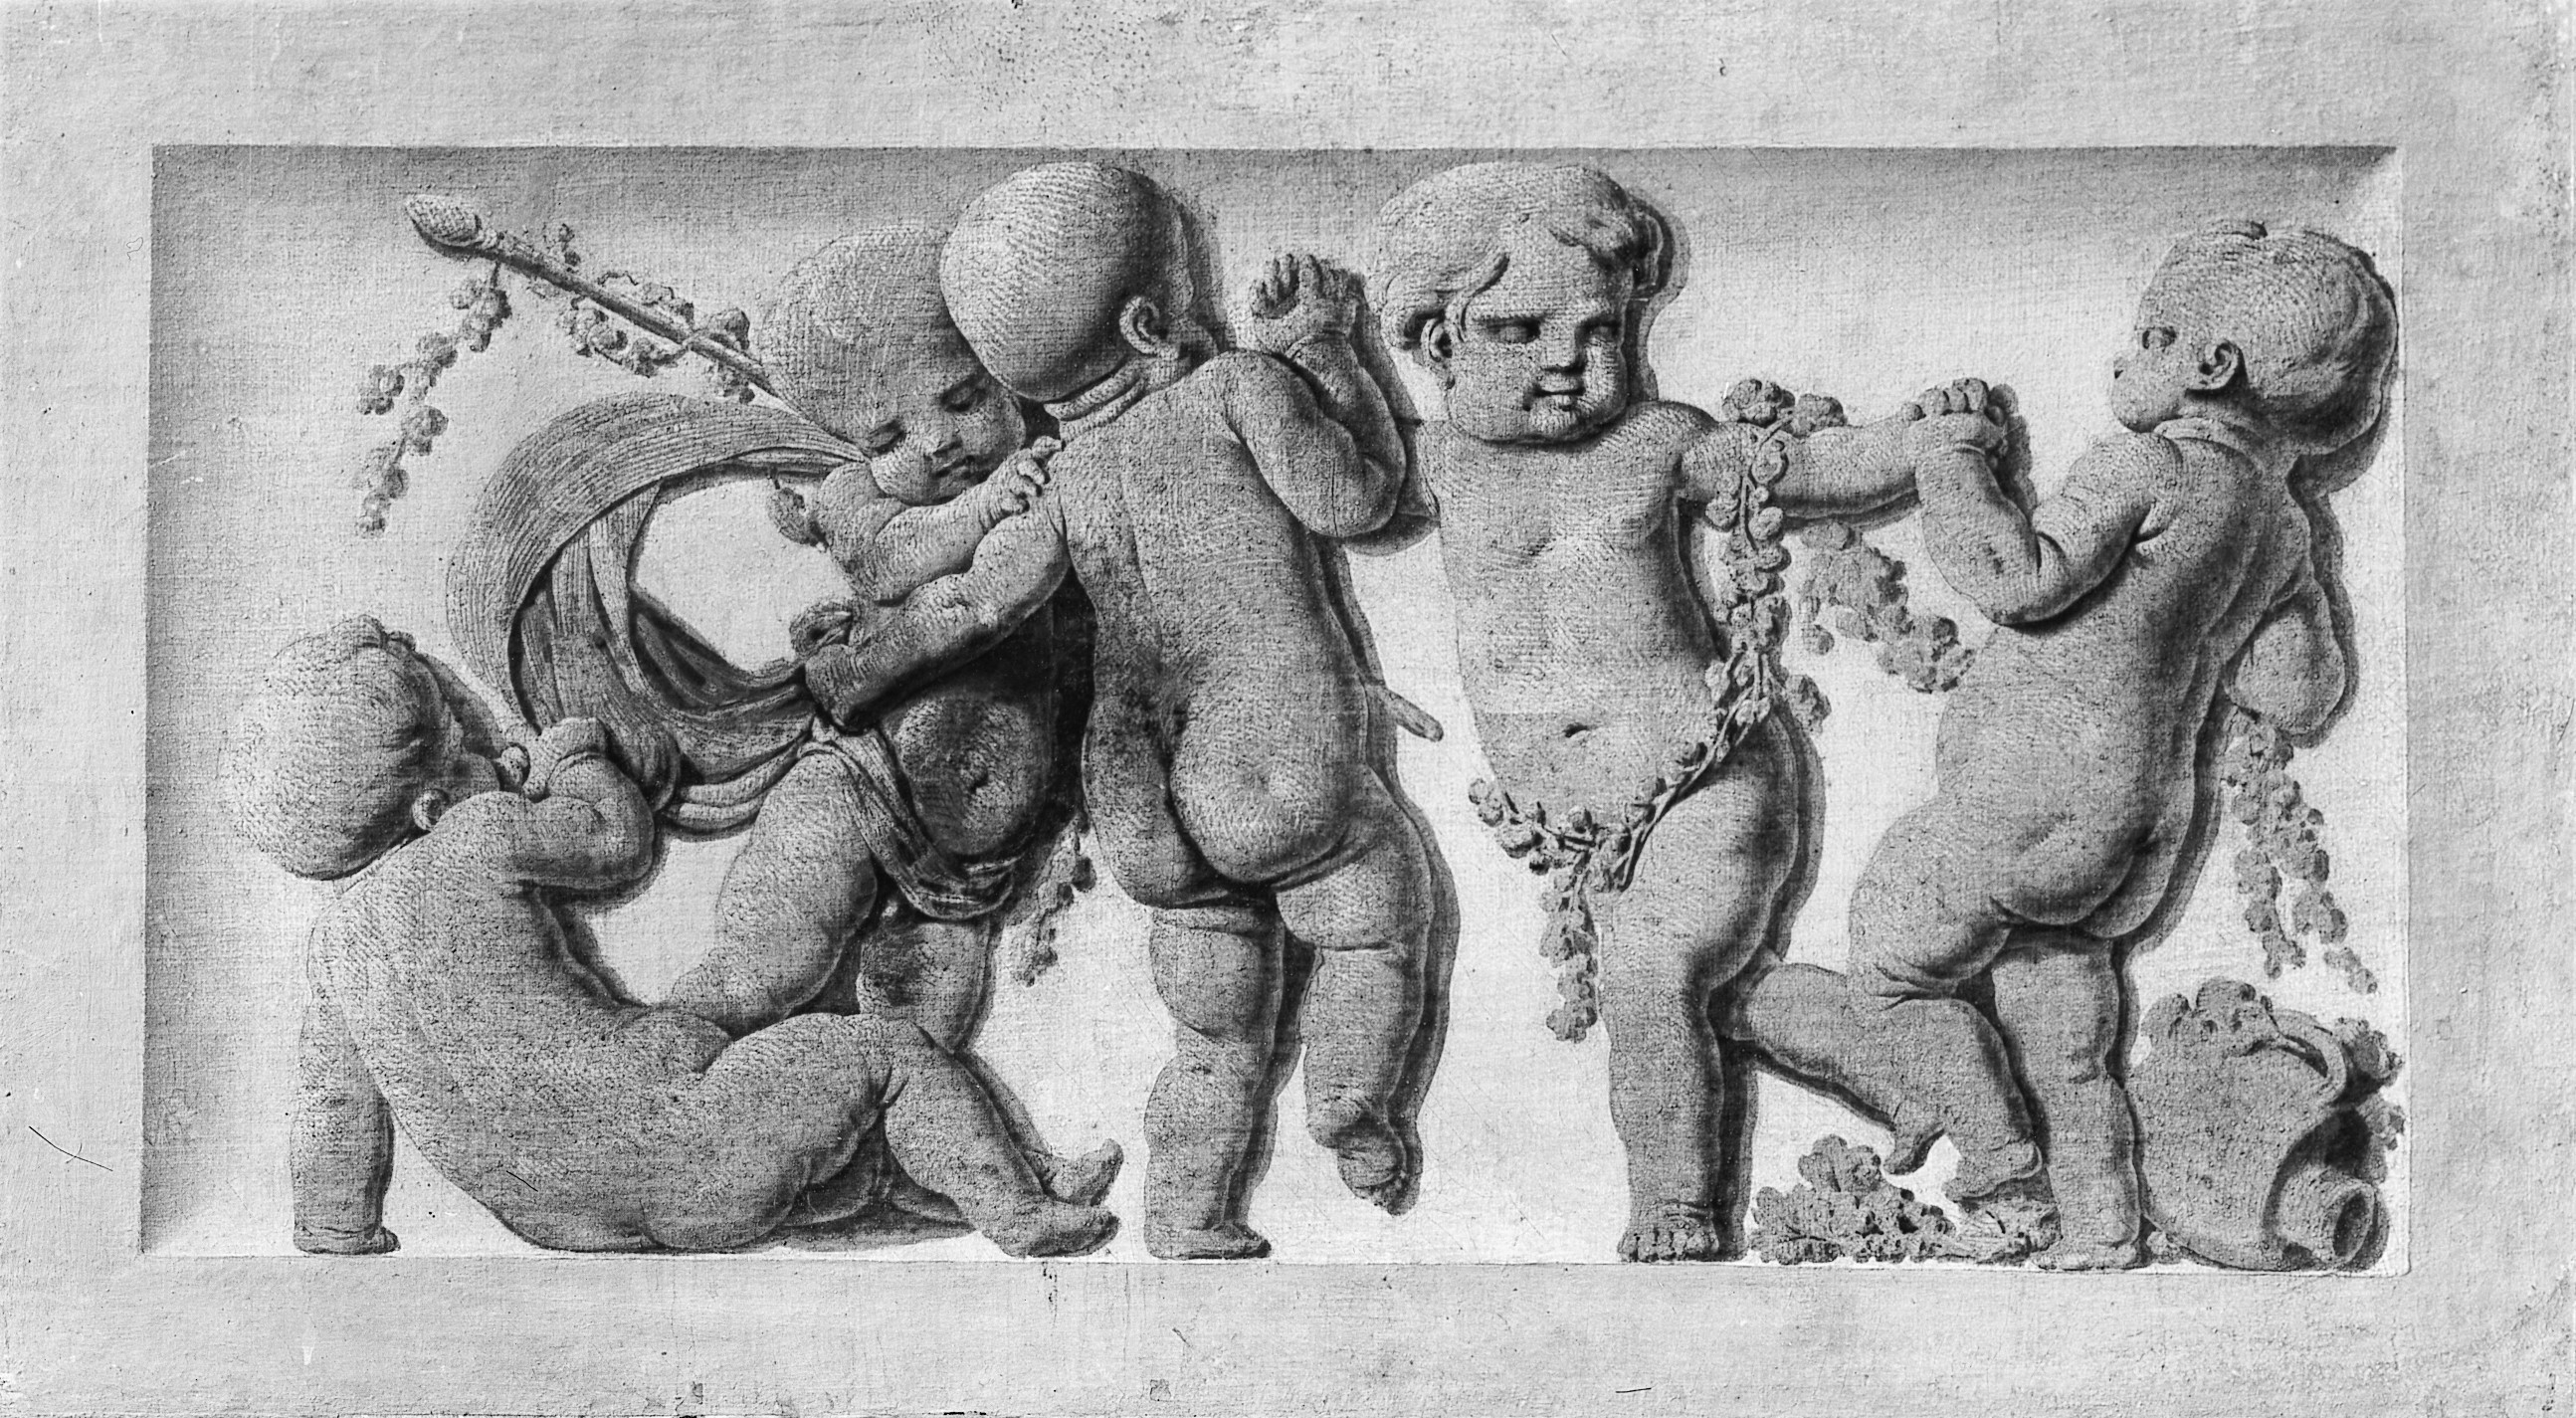 Donatello (ca. 1386–1466), Essay, The Metropolitan Museum of Art